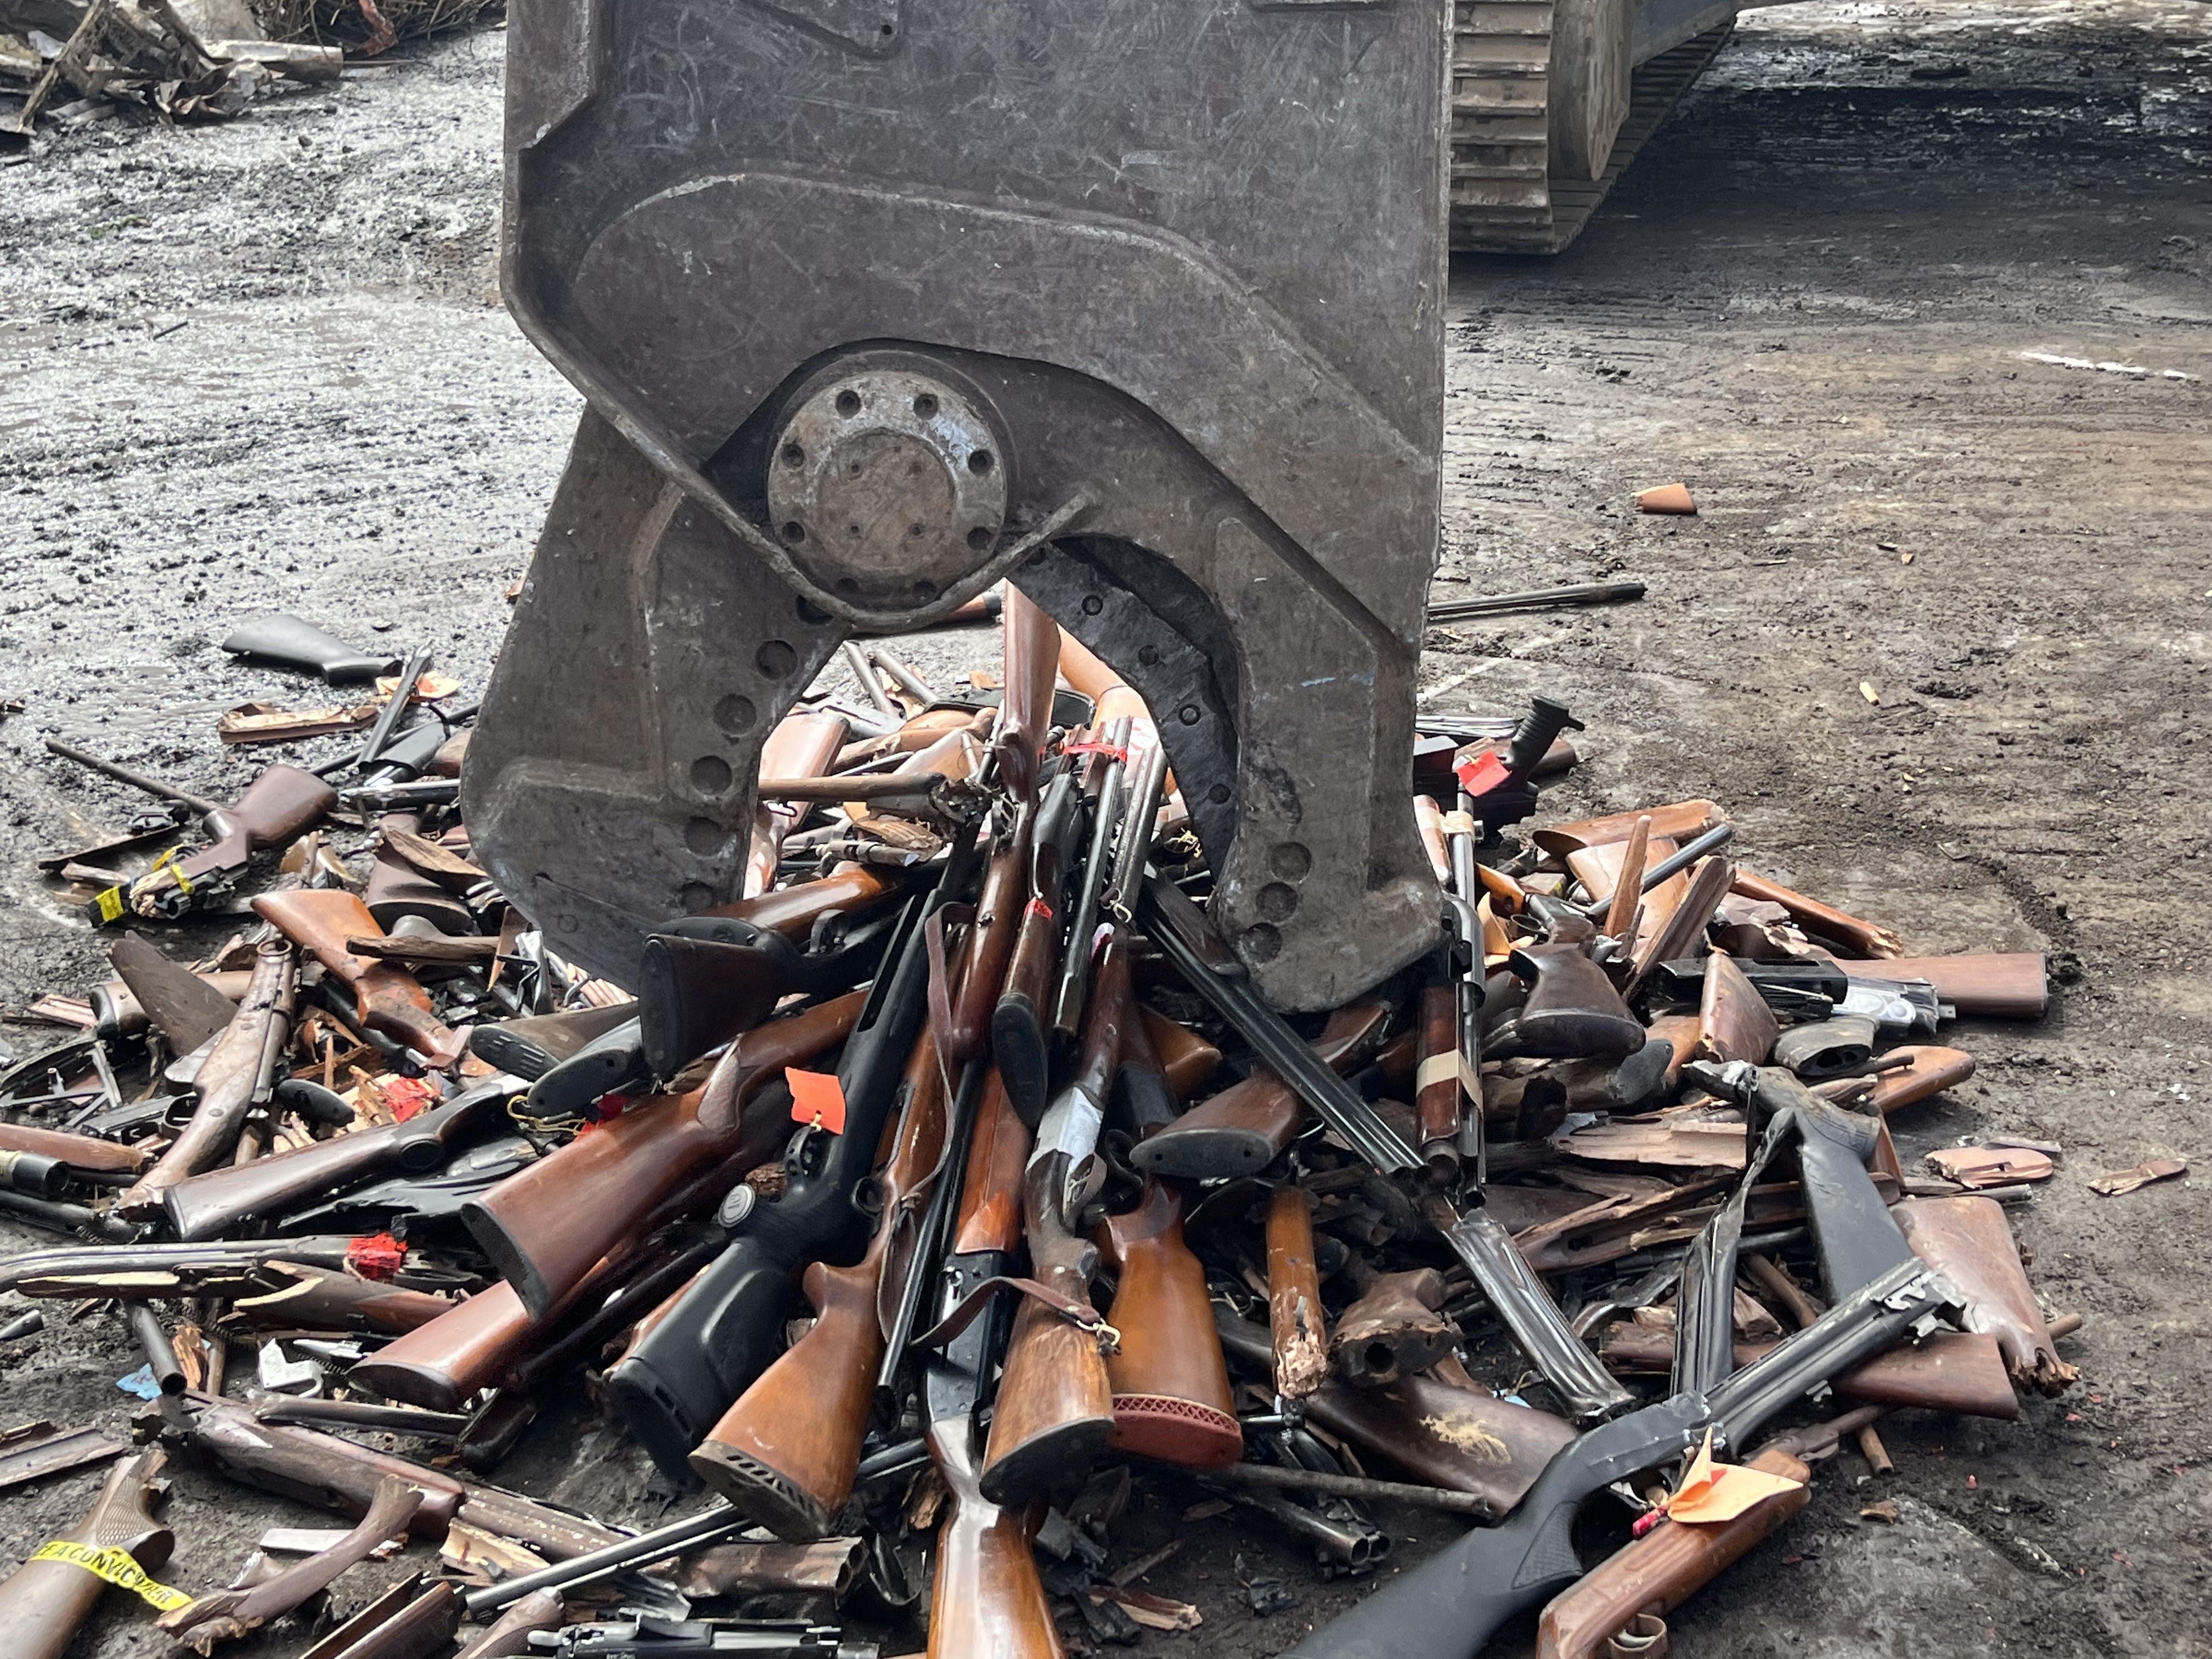     Un stock de 600 armes à feu détruit par les autorités en Martinique

